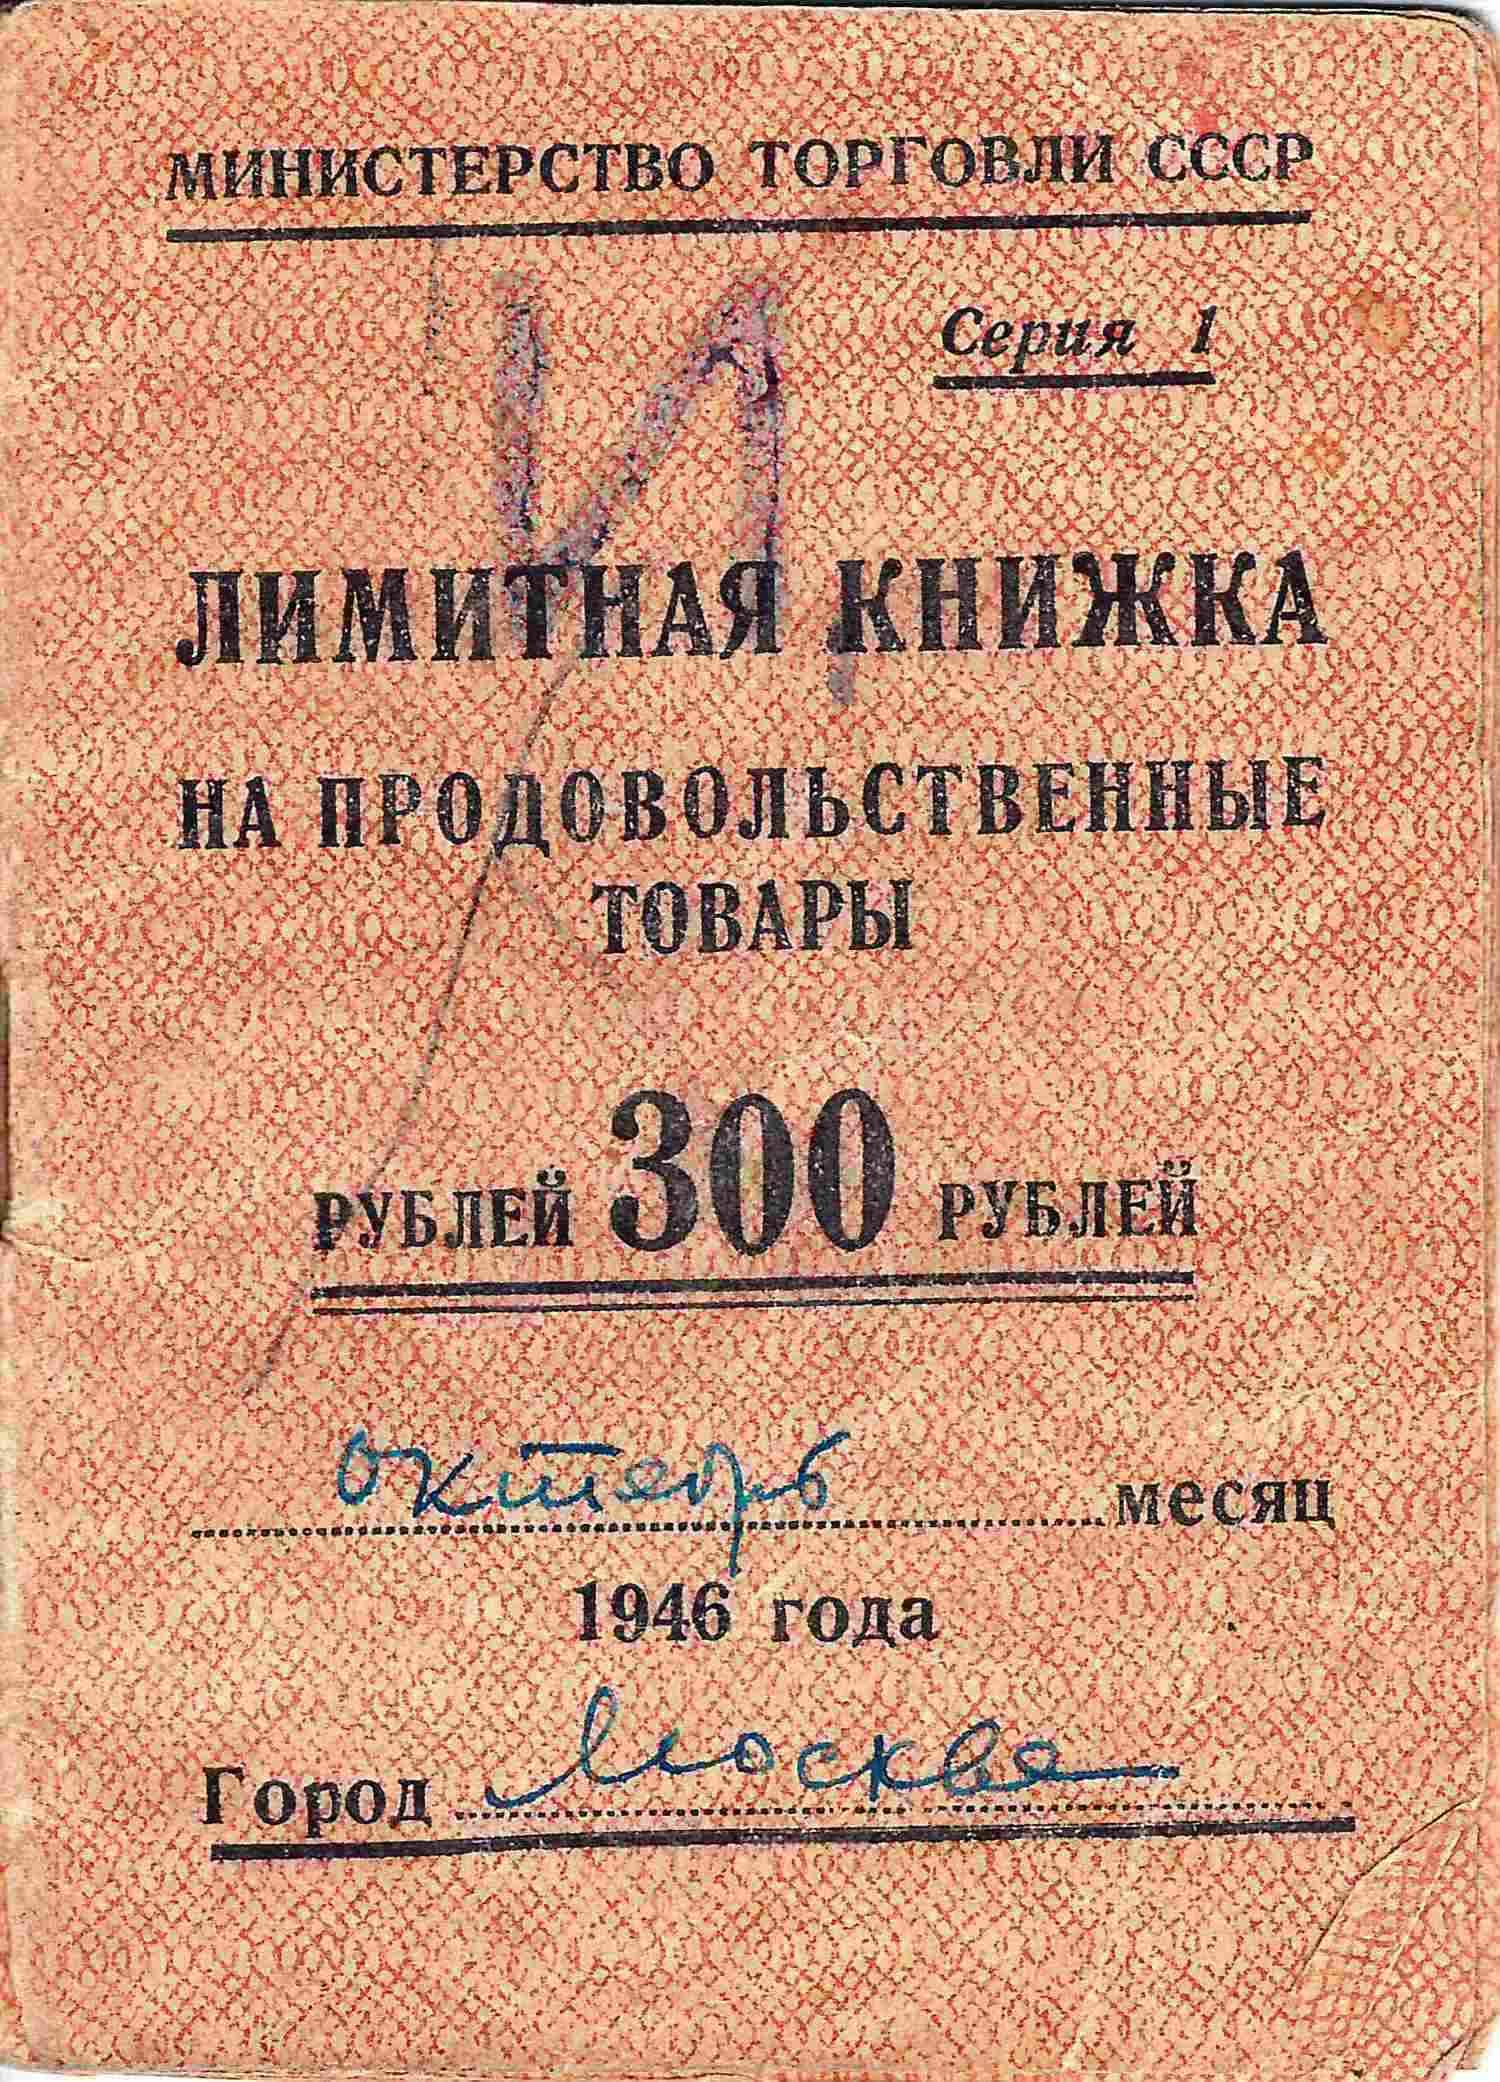 Лимитная книжка на продовольственные товары на 300 рублей на октябрь 1946 года.